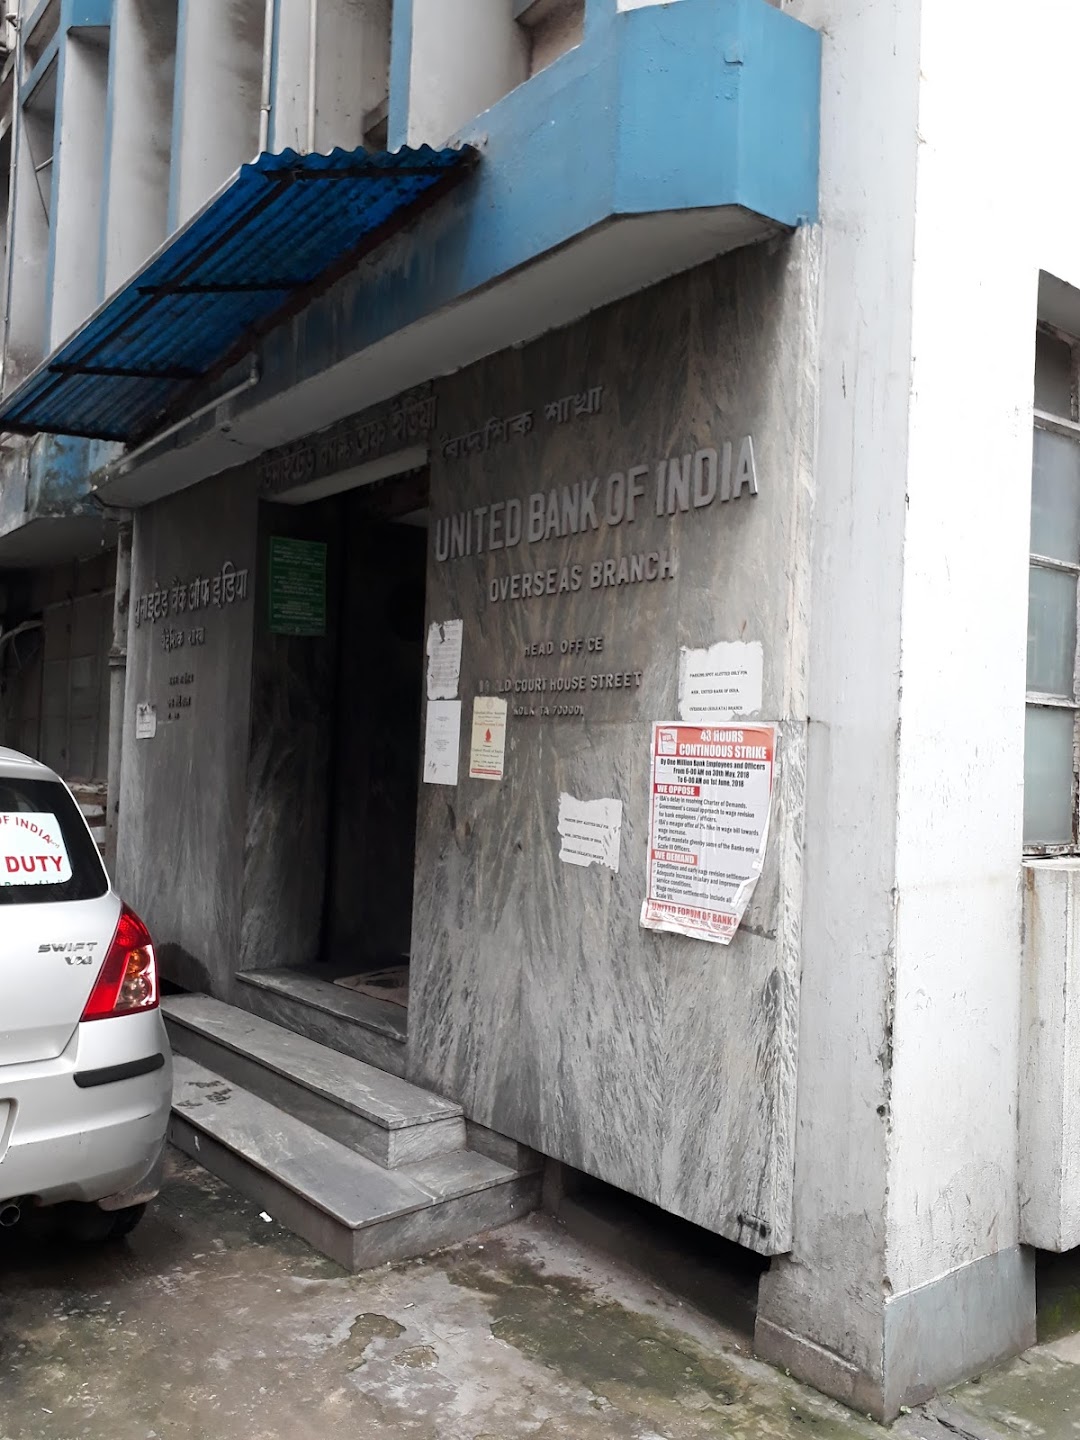 PUNJAB NATIONAL BANK (eUBI) - Overseas Kolkata Branch